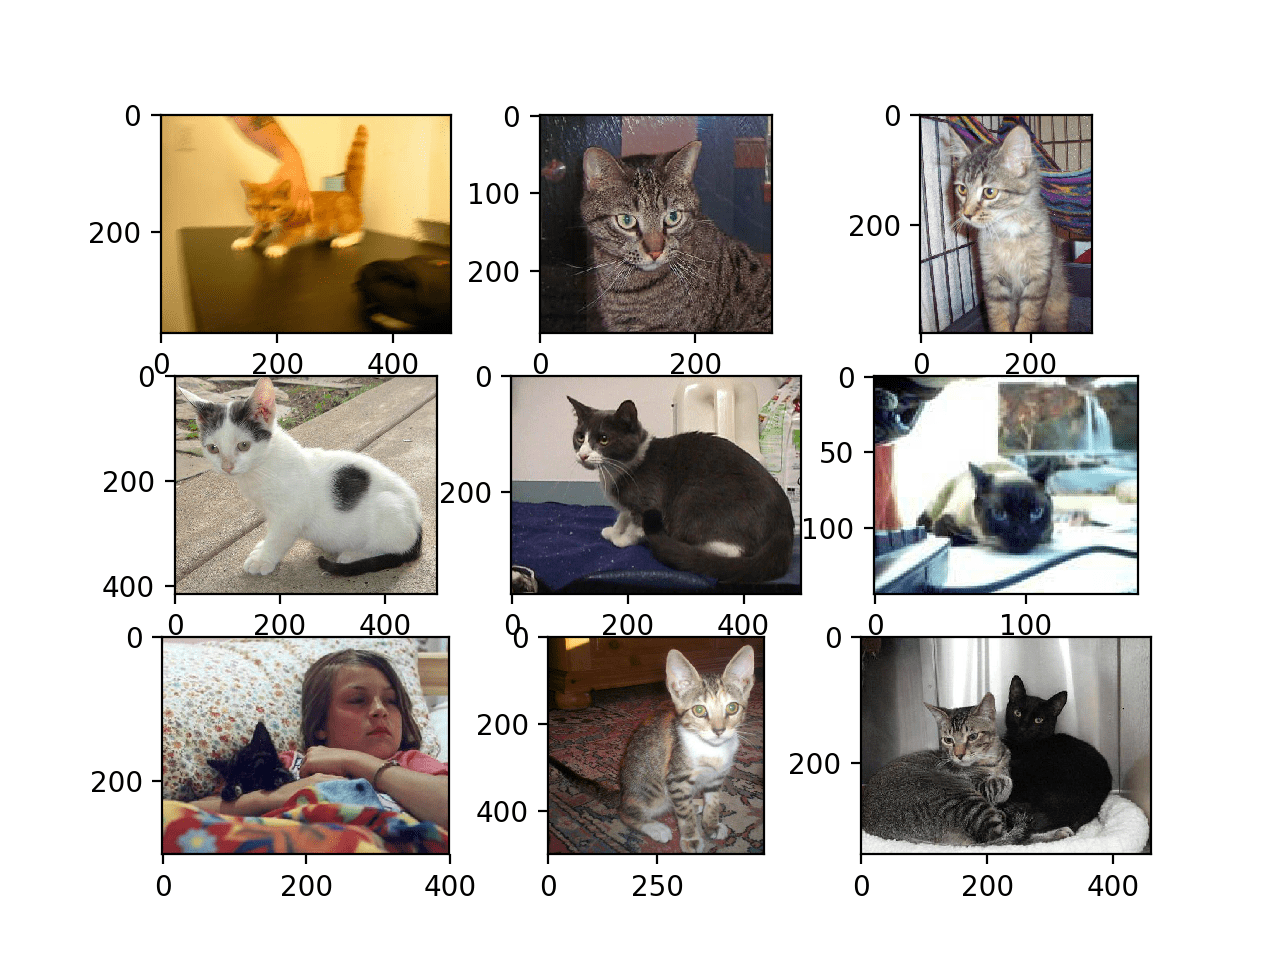 猫与猫数据集中的猫的前九张照片图解